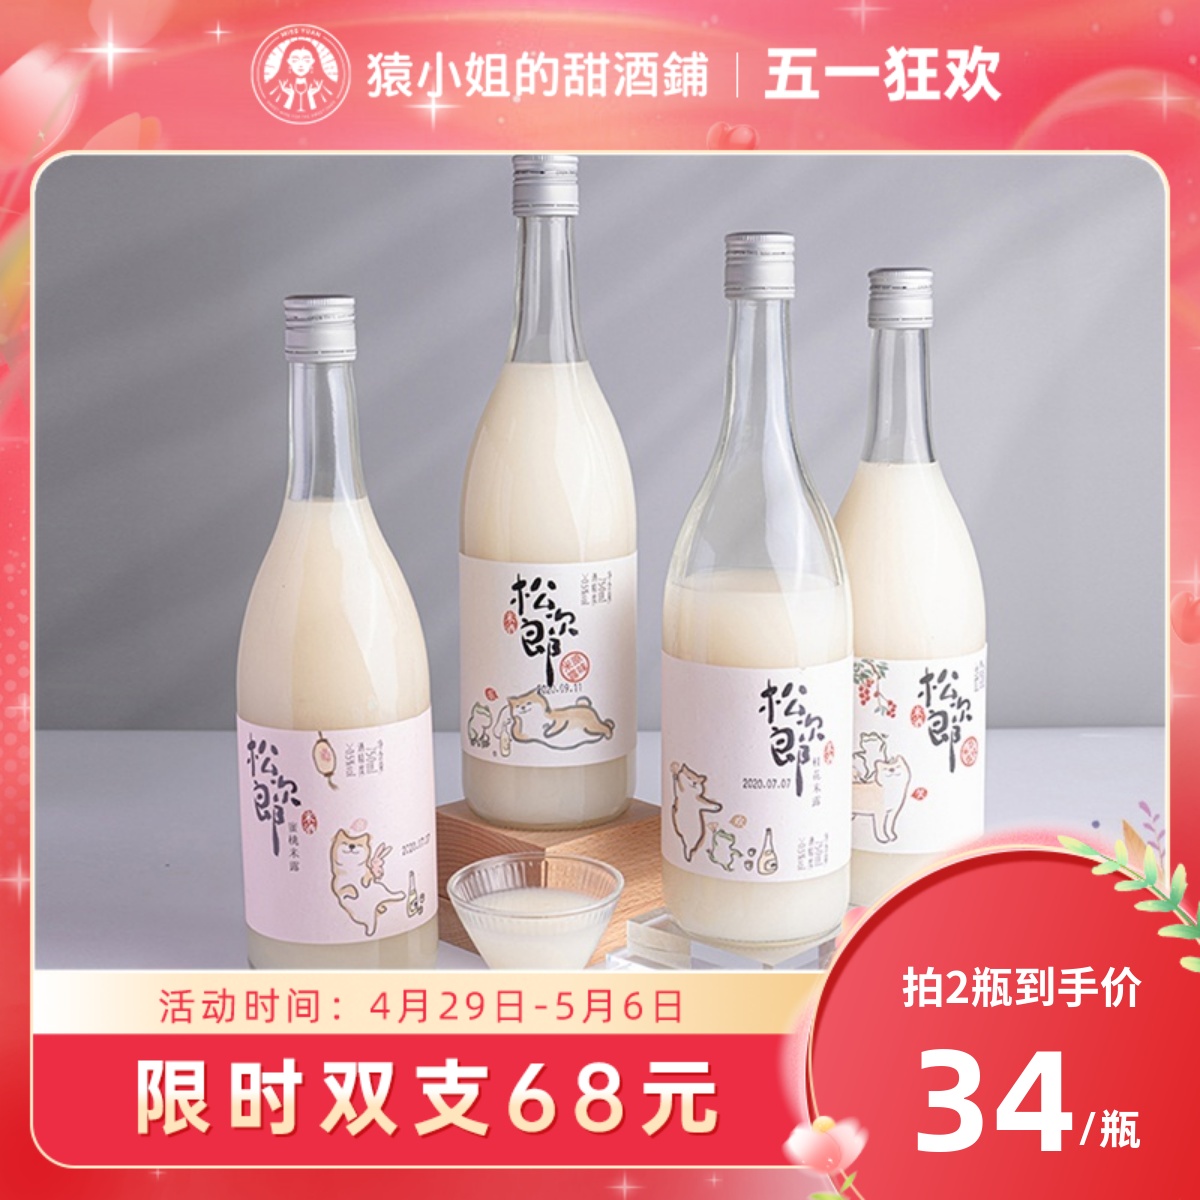 苏州桥 松次郎 蜜桃米露 0.5%vol 750ml 单瓶装